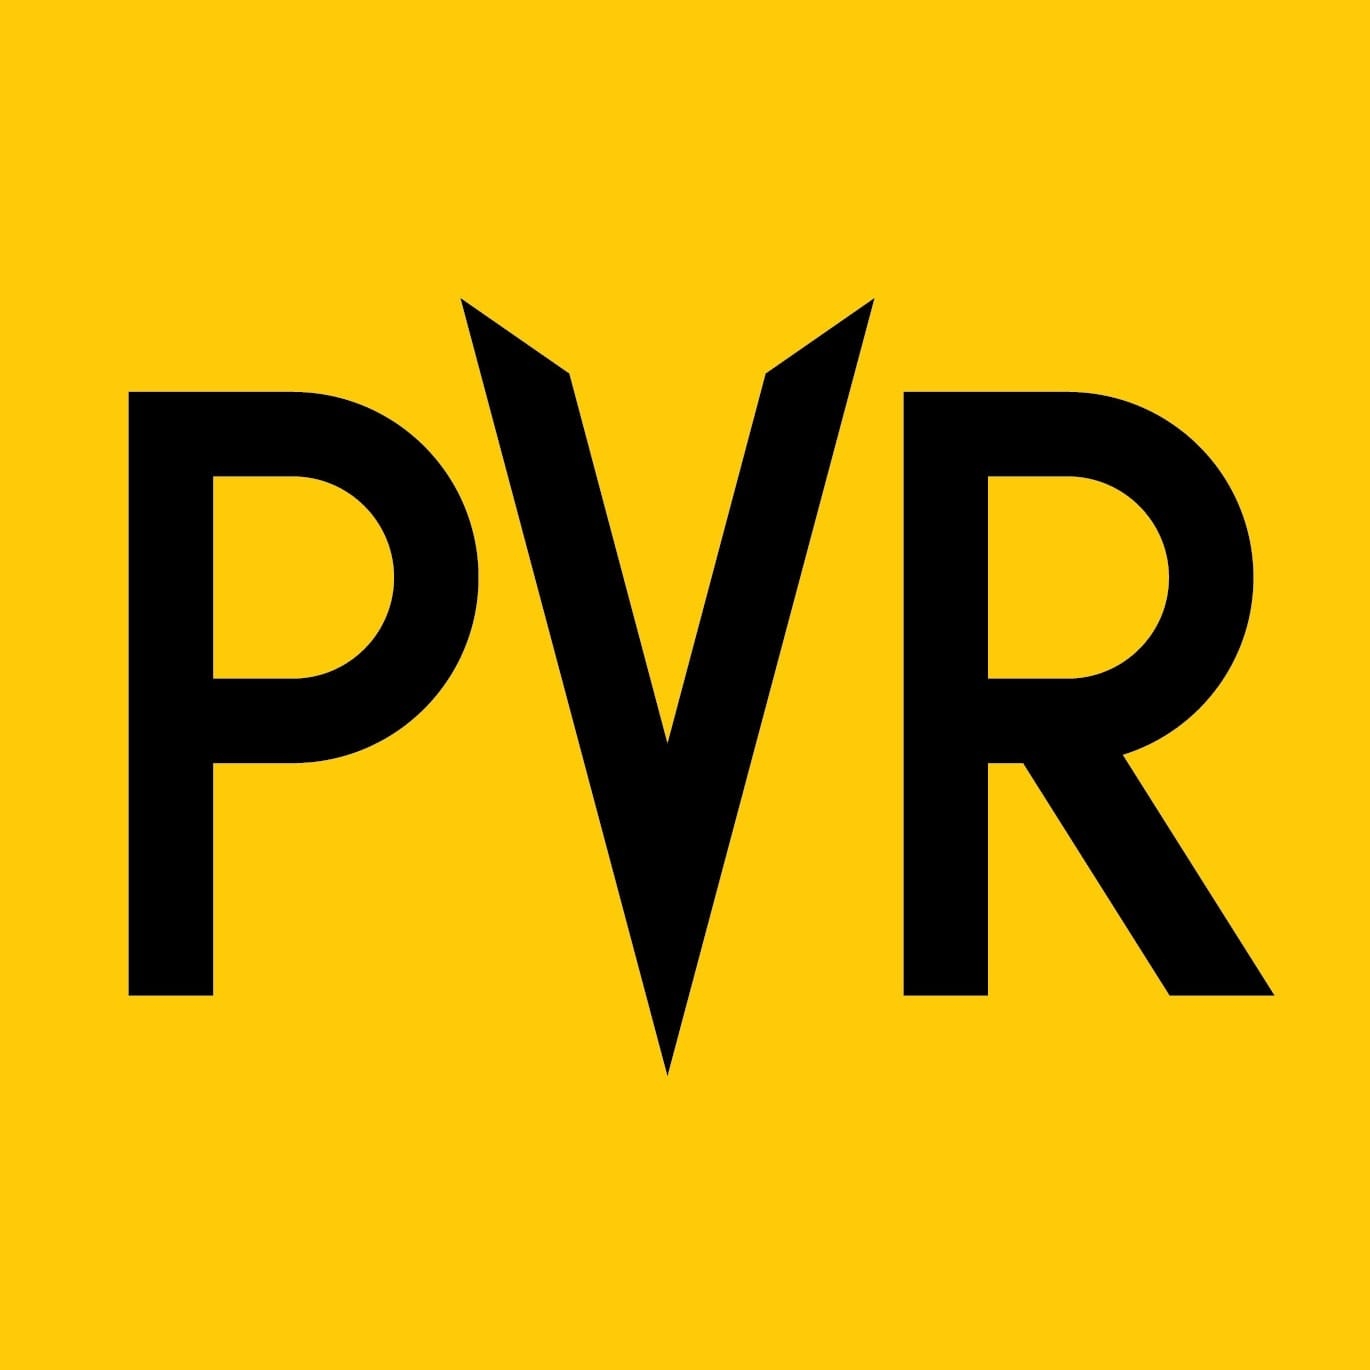 PVR Premiere Logo